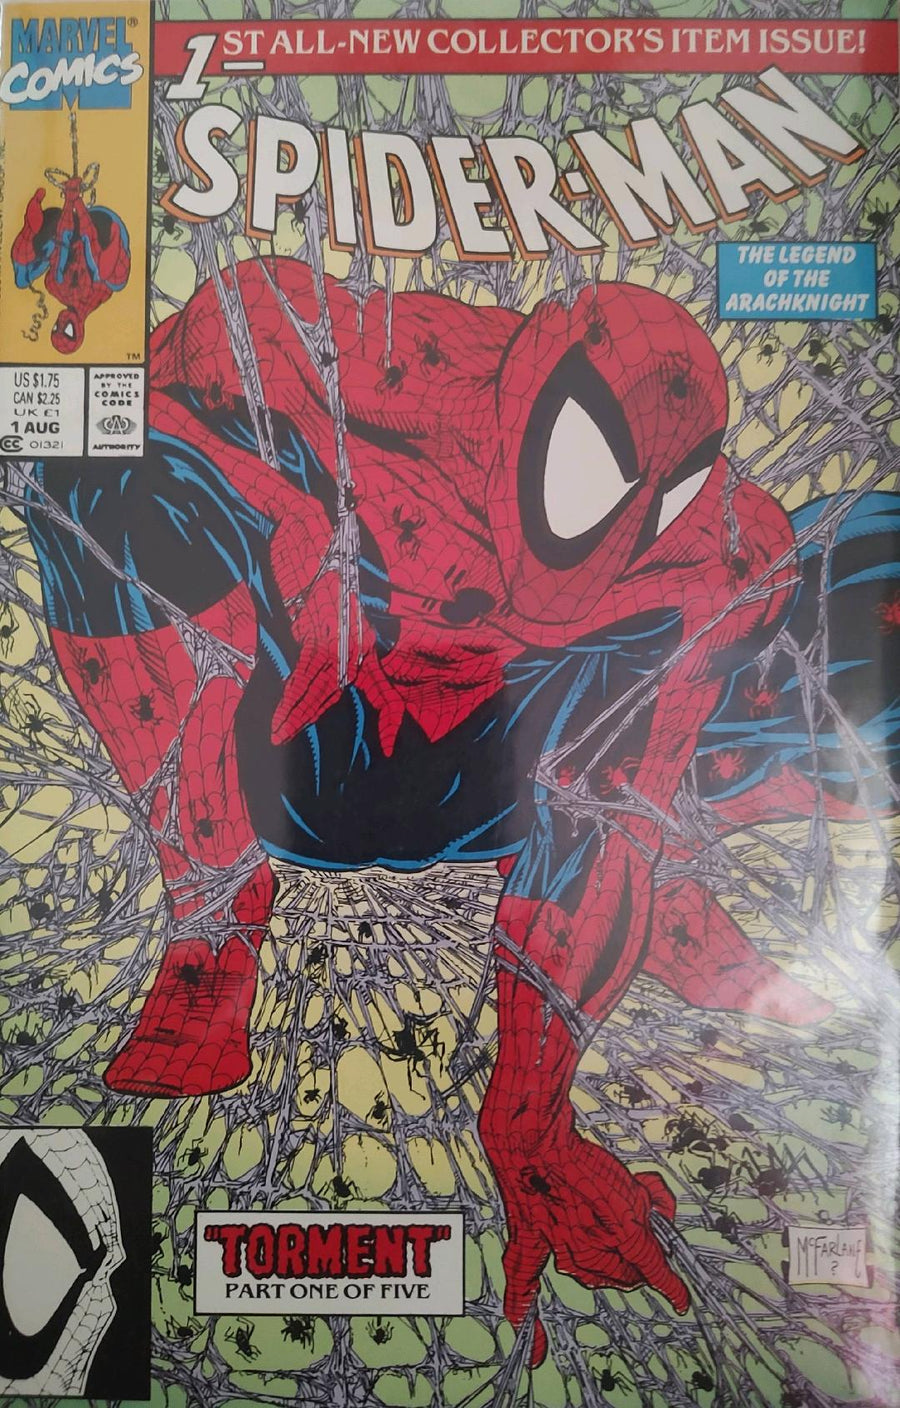 Spiderman #1 Comic Book Cover